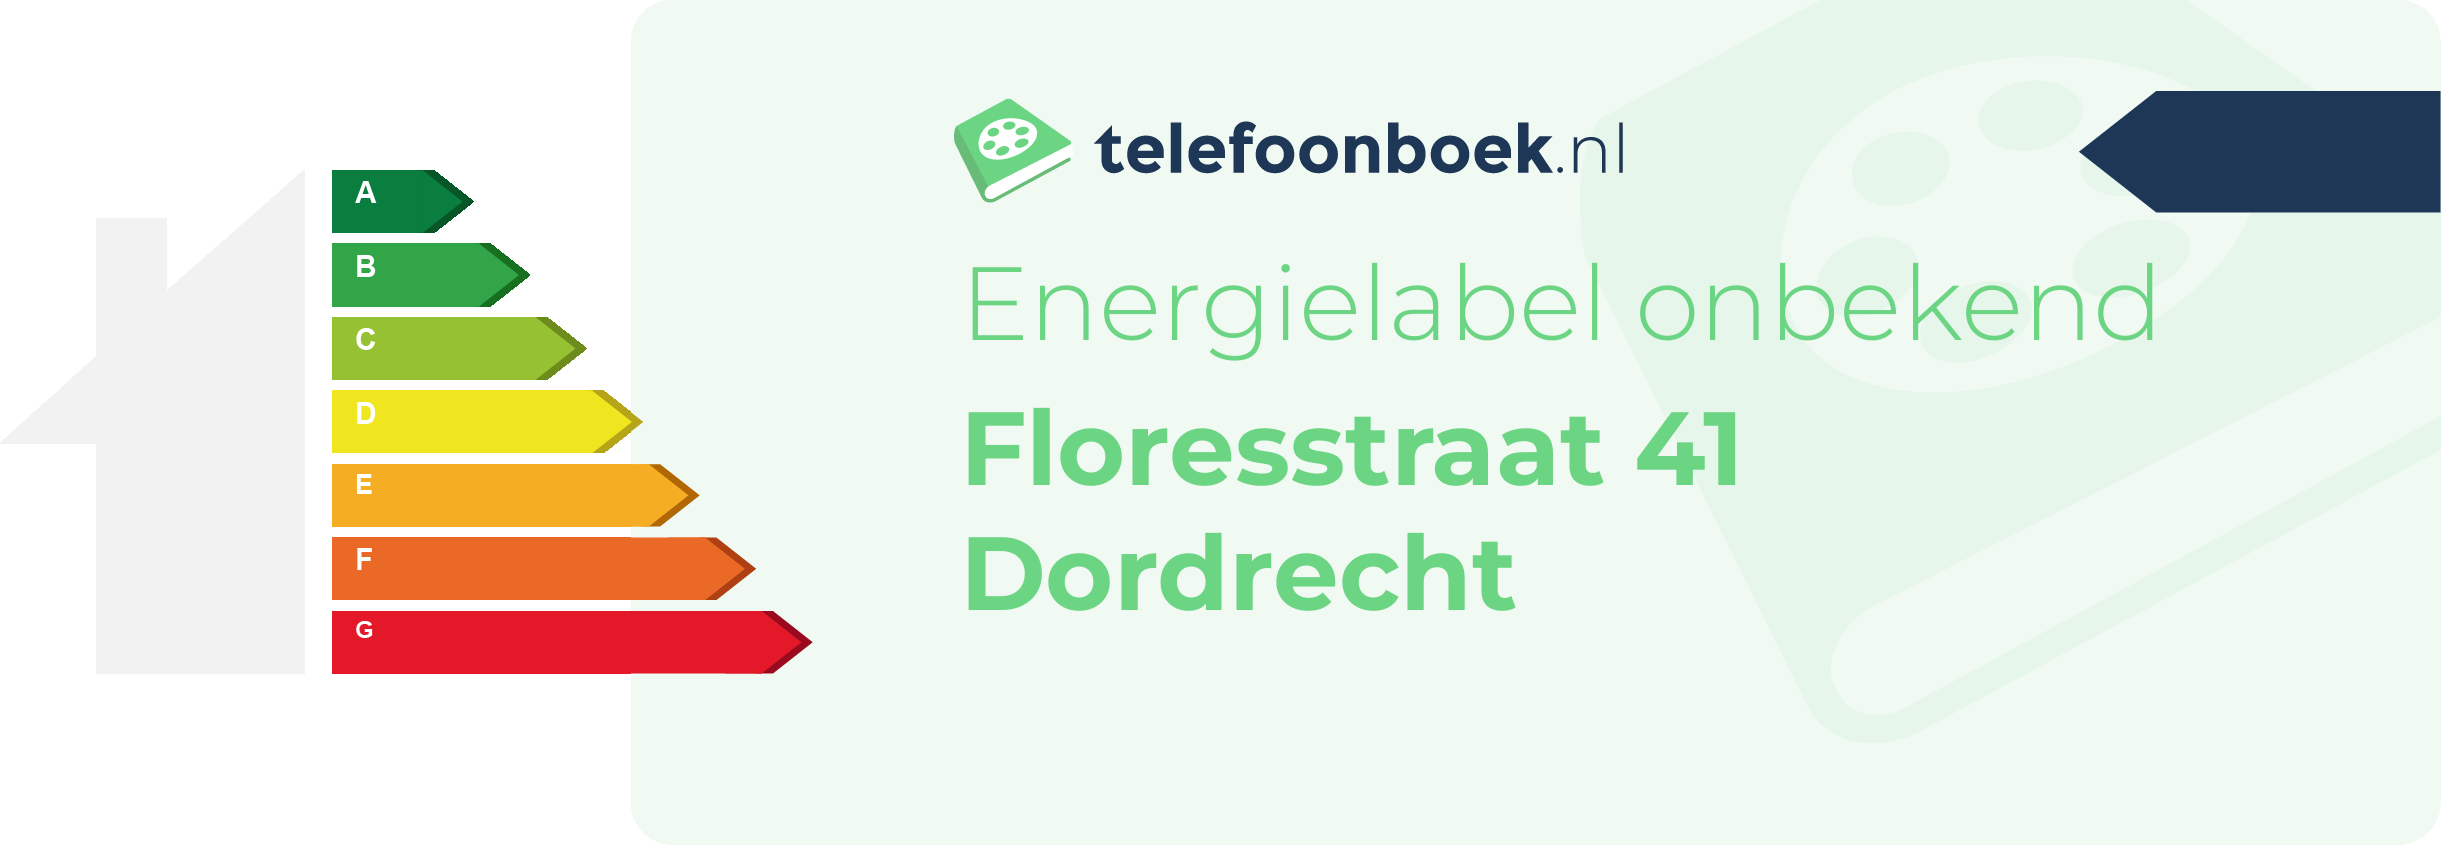 Energielabel Floresstraat 41 Dordrecht